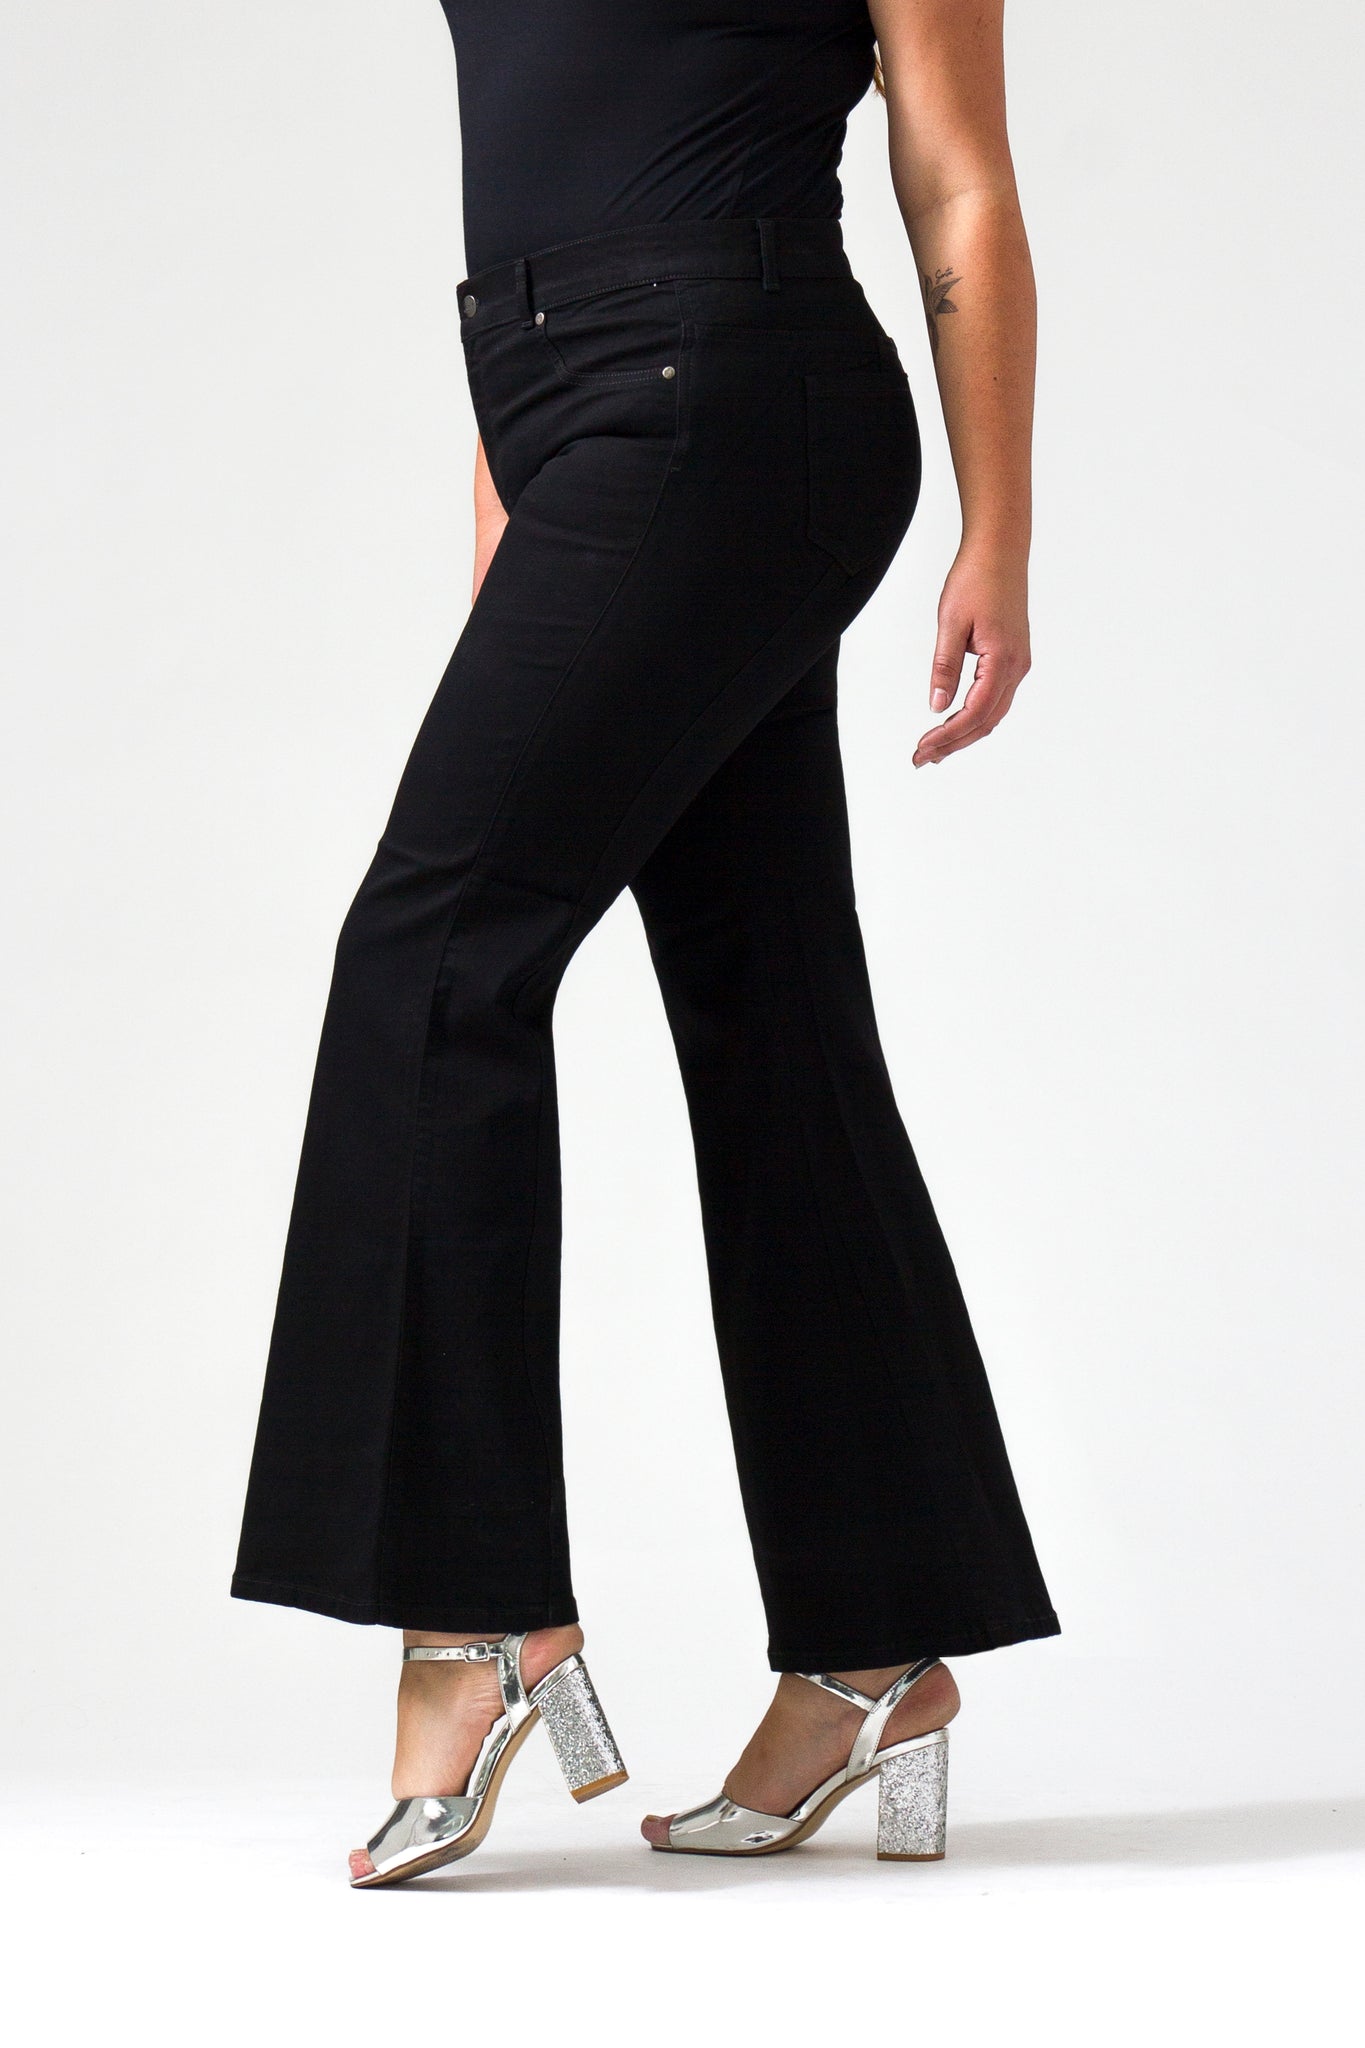 OHPOMP!® Curvy Cintura Alta Flare Jeans Negro F018